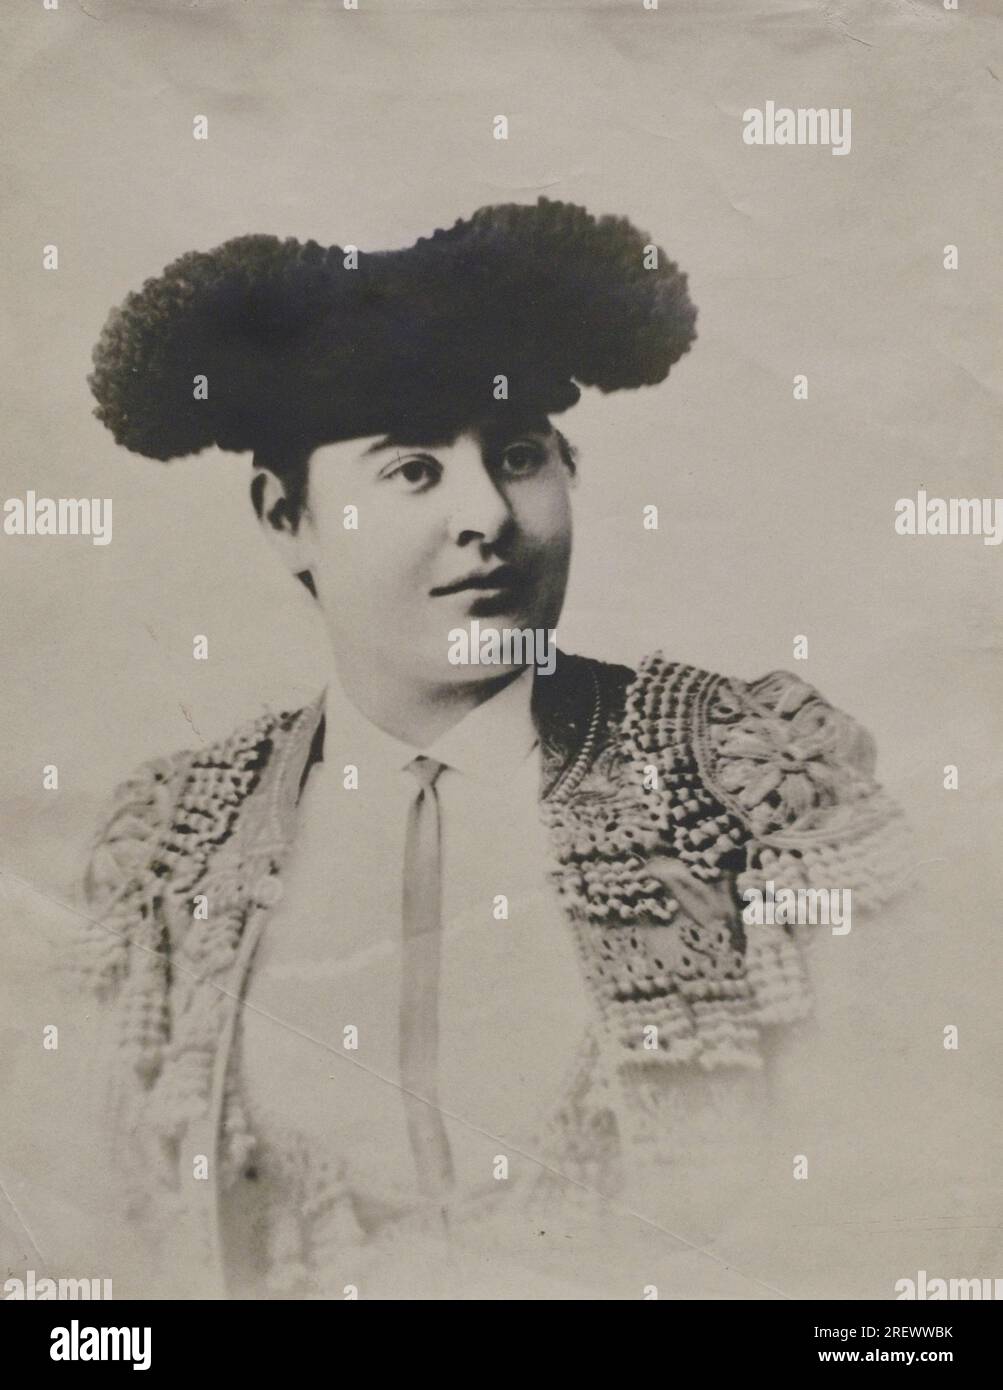 Anonym. Porträt einer Stierkämpferin. Letztes Quartal des 19. Jahrhunderts. Holzburytype auf Fotopapier, 25,7 x 20,4 cm. Prado-Museum. Madrid. Spanien. Stockfoto